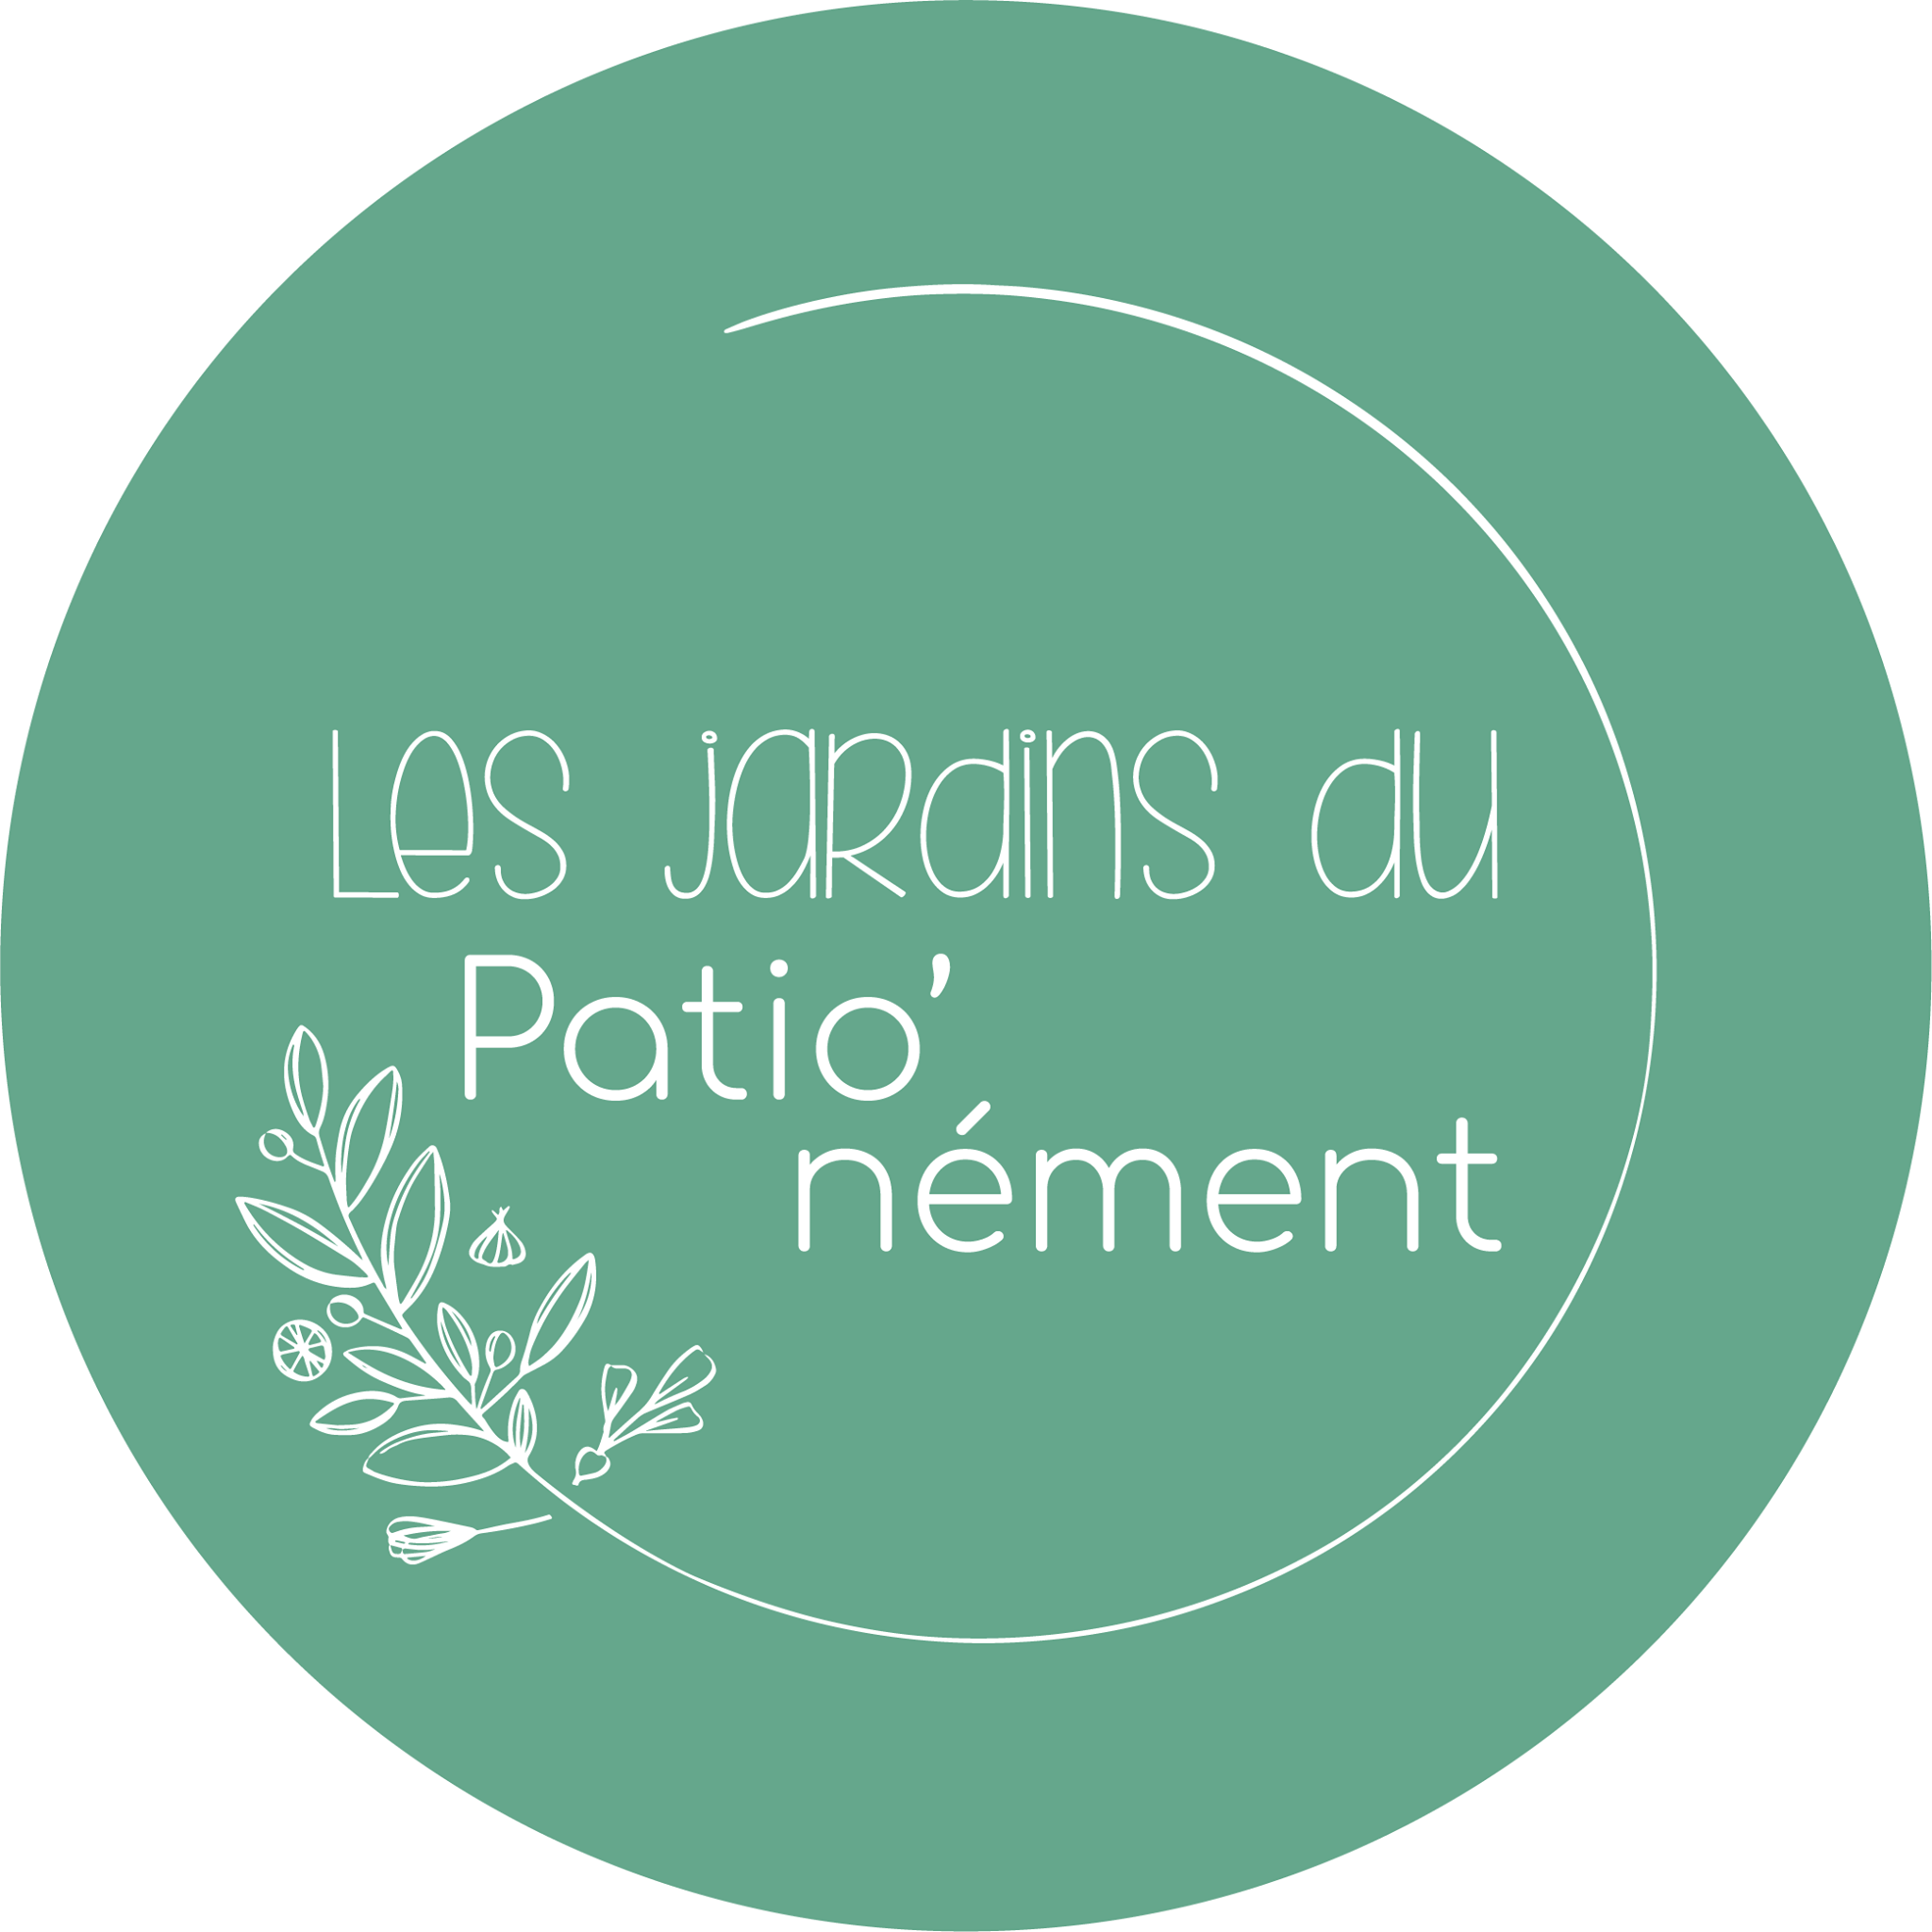 image jardin_du_pationement.png (0.4MB)
Lien vers: https://www.pationement.com/accueil